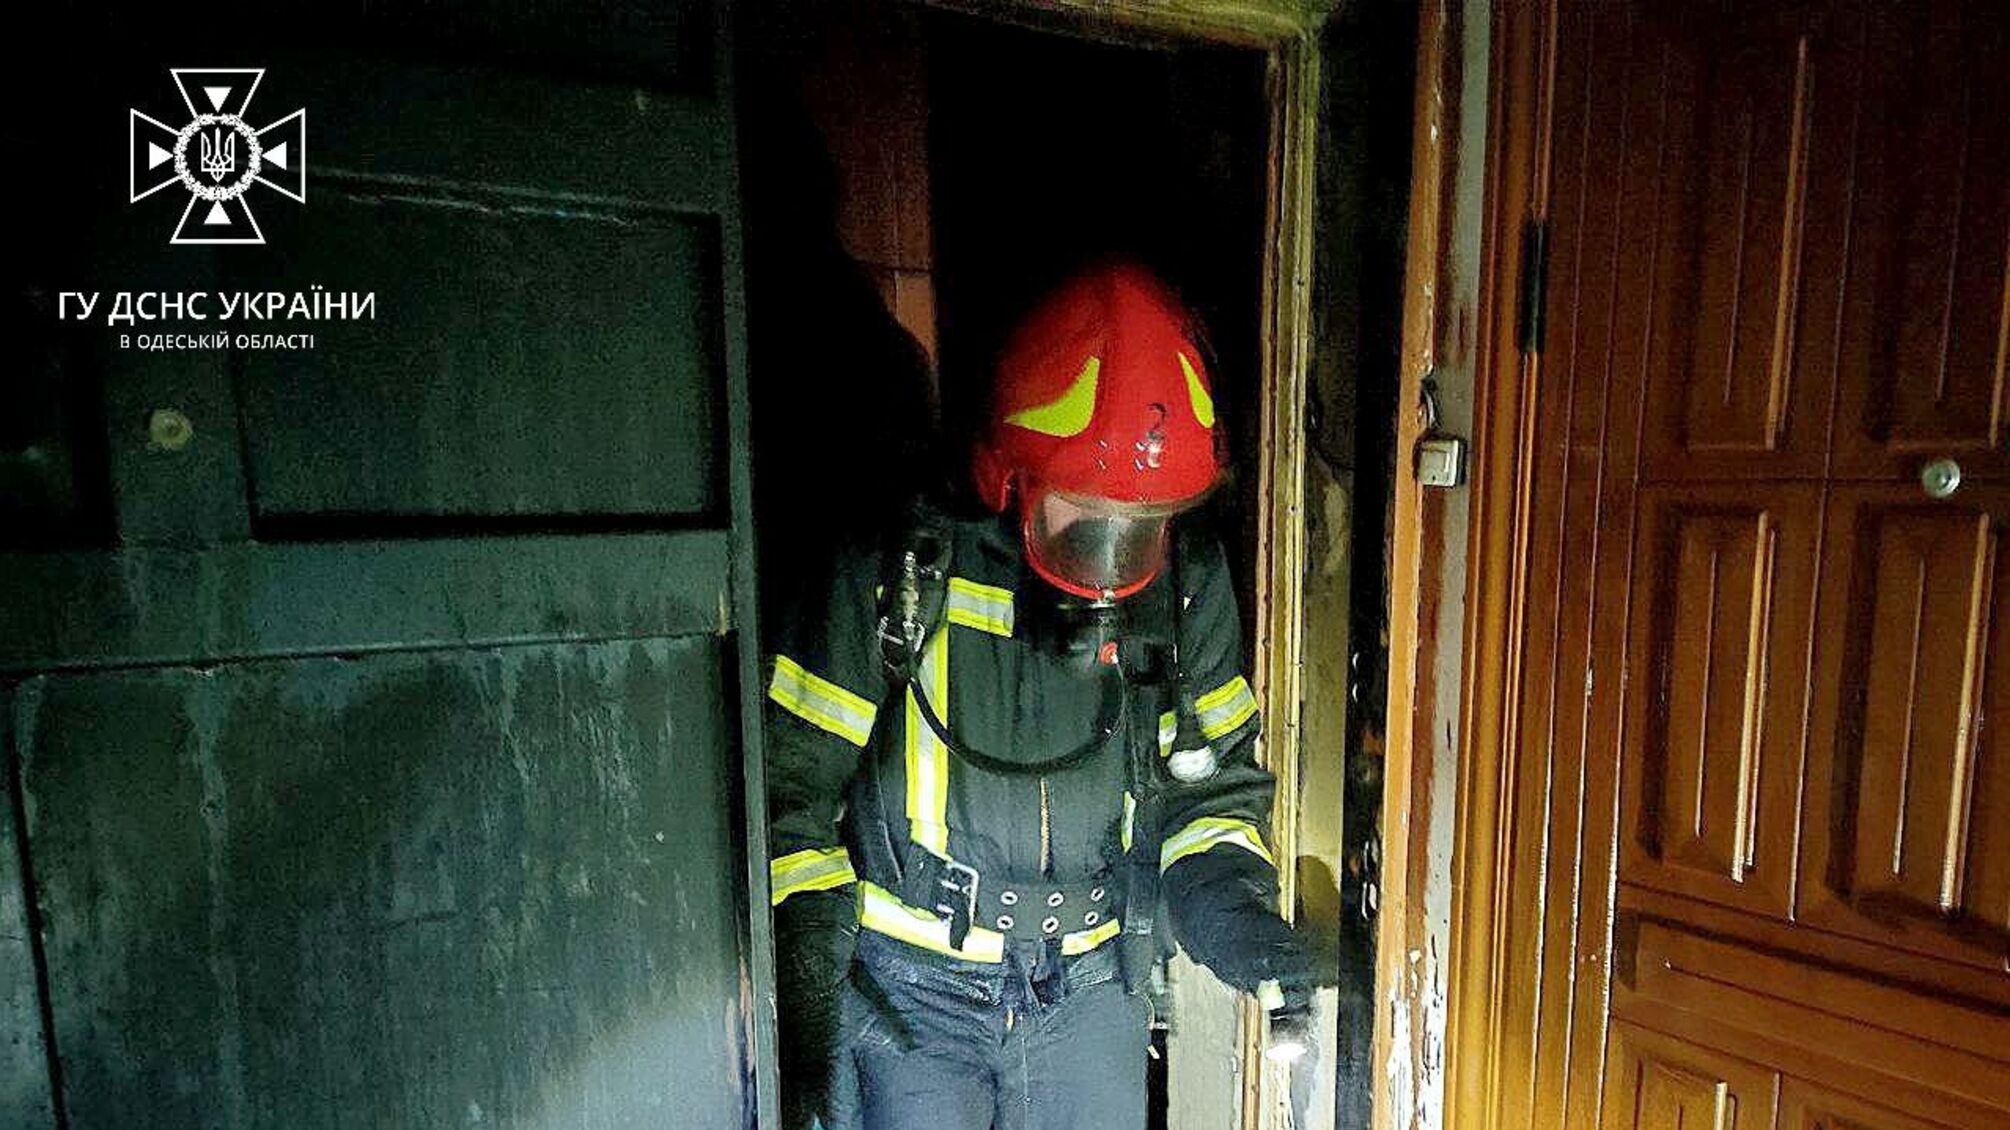 В Одесі - масштабна пожежа: евакуйовано 5 мешканців будинку, з них 1 дитину